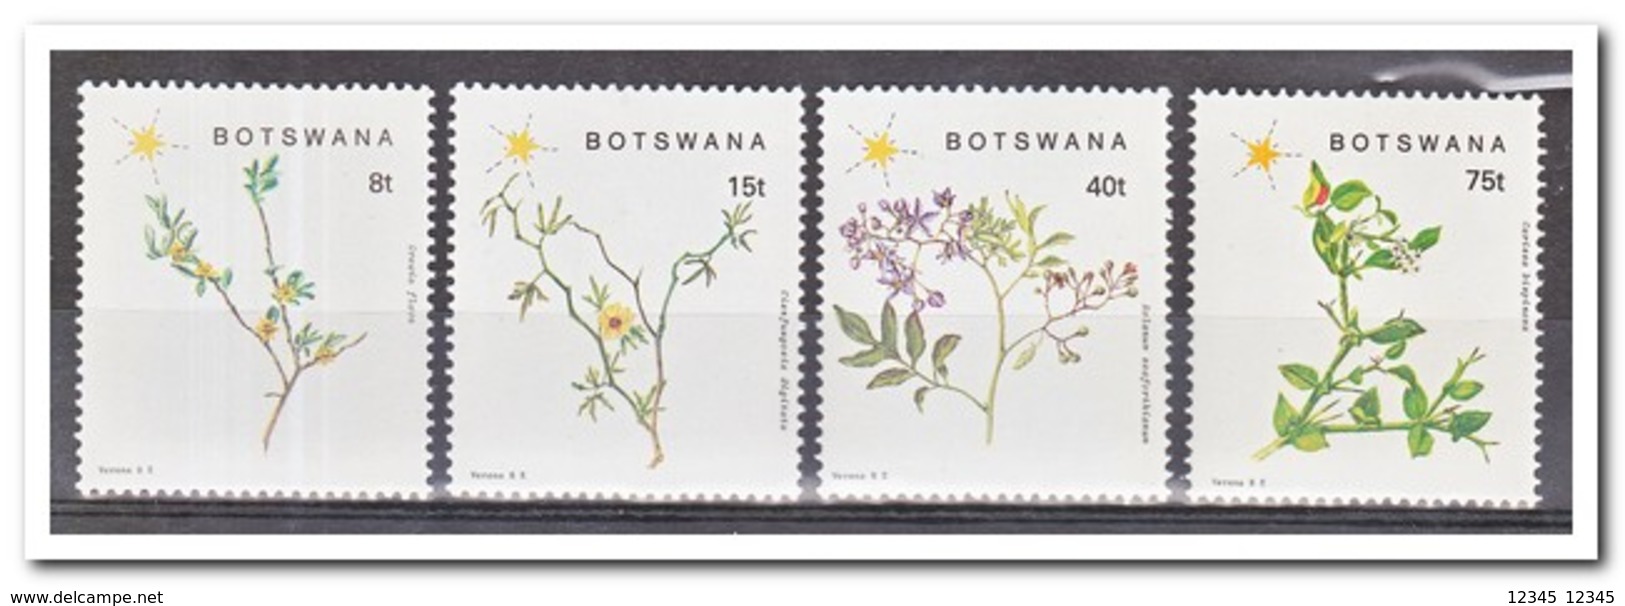 Botswana 1988, Postfris MNH, Plants - Botswana (1966-...)